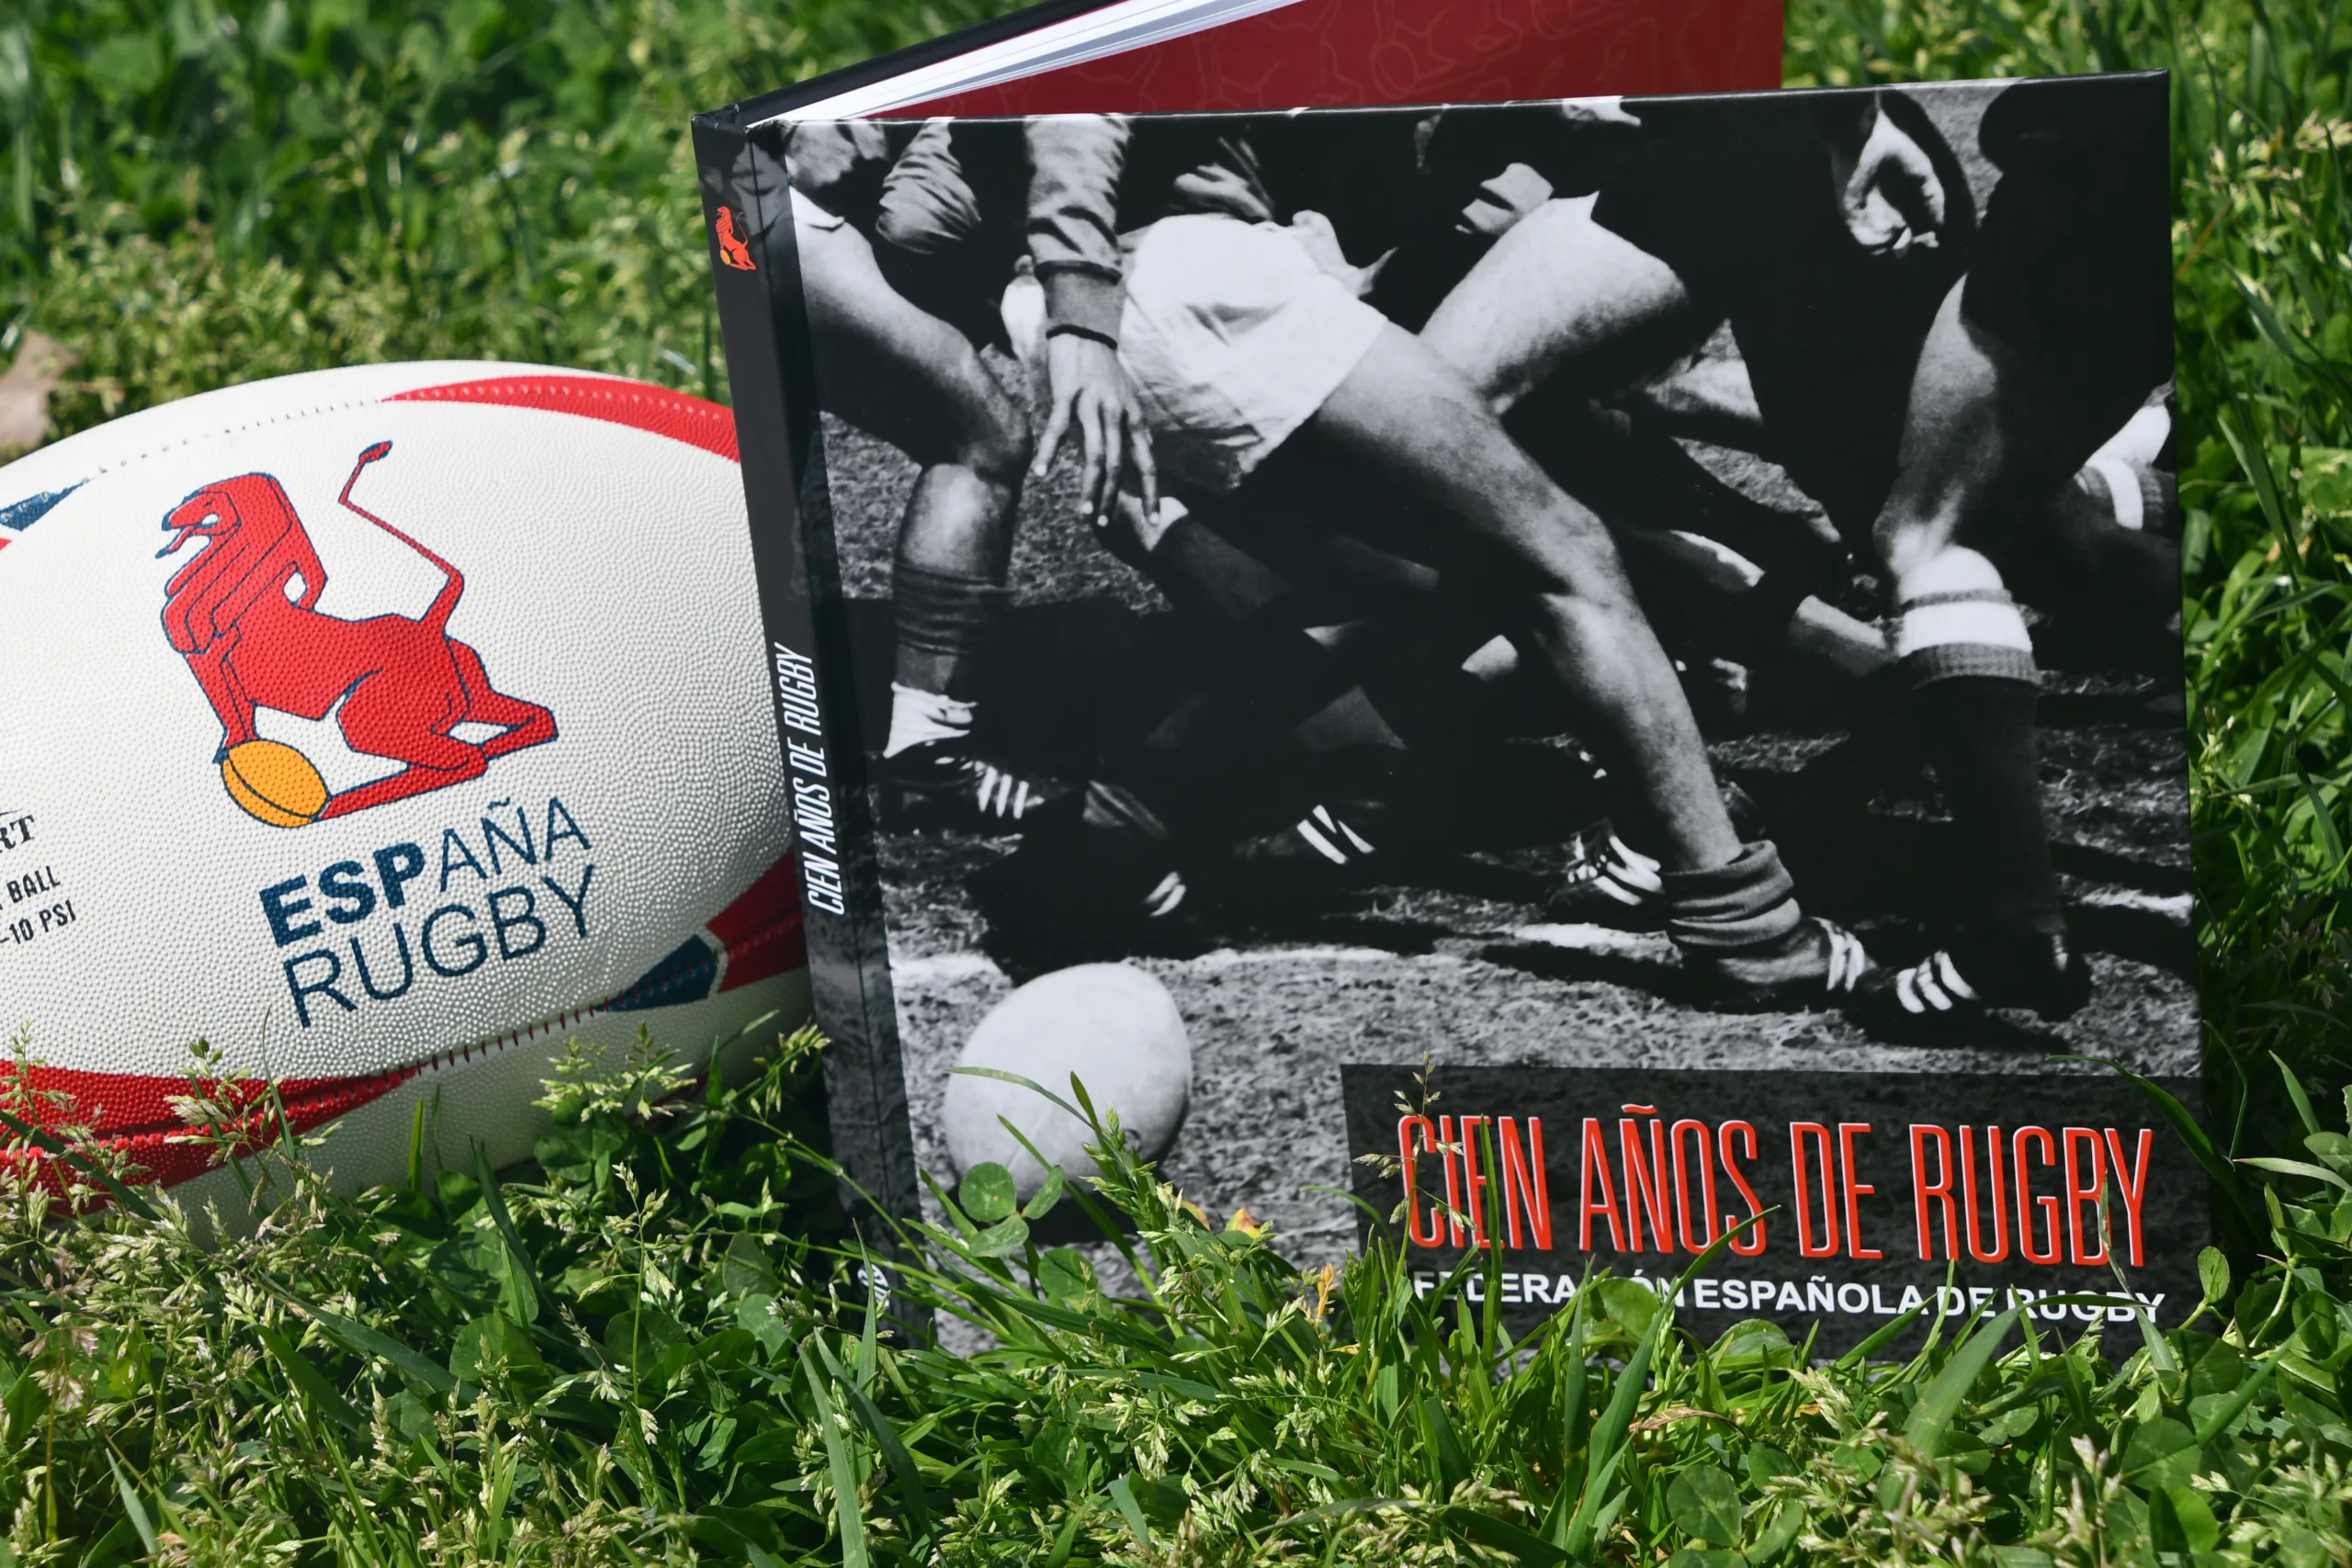 Presentación del libro “Cien años de rugby”, este jueves en Madrid